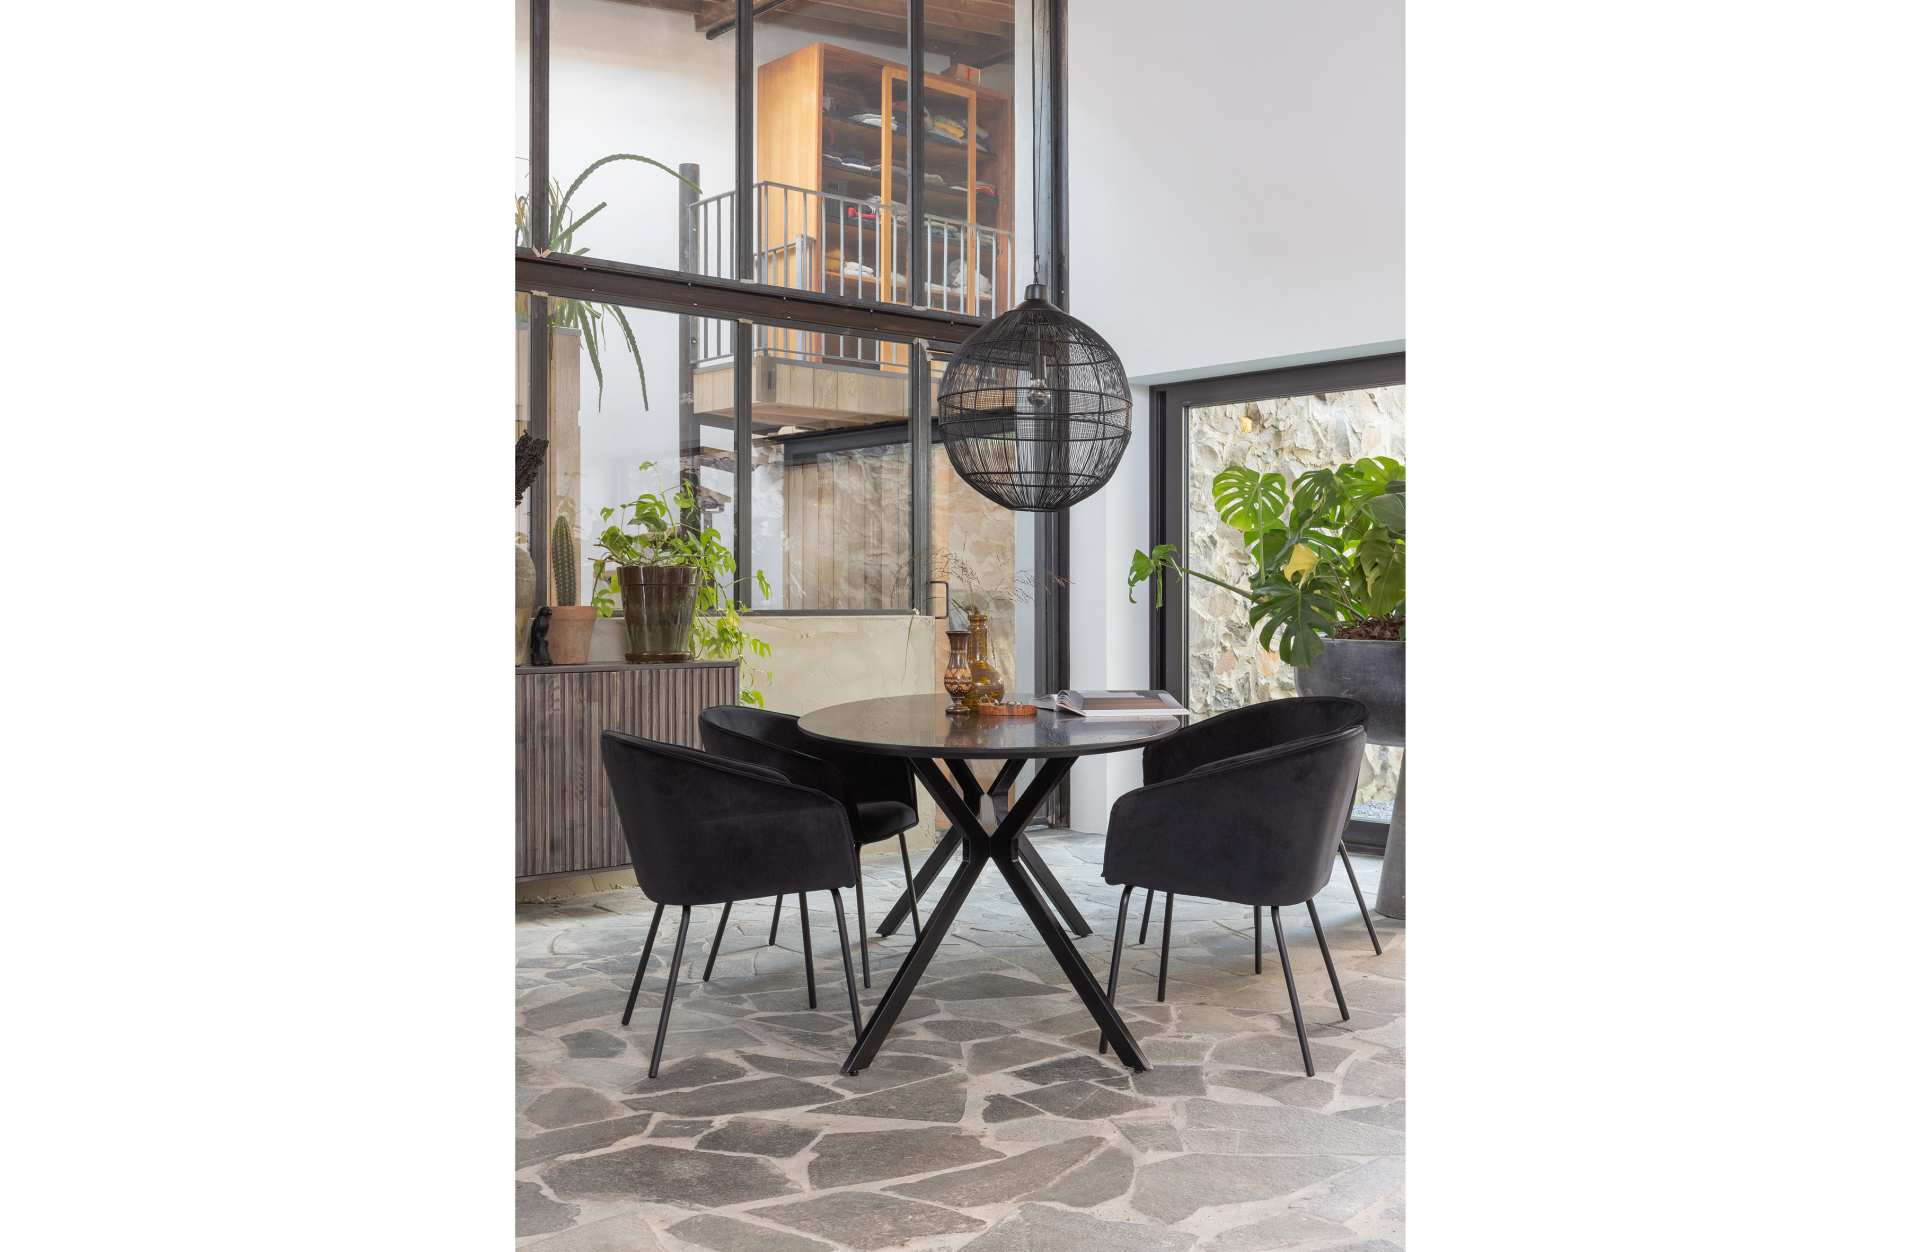 Der Esszimmerstuhl Sien wurde mit einem Samt Bezug bezogen. Er ist immer als 2er-Set erhältlich. Der Stuhl ist in zwei Varianten verfügbar, dieser besitzt die Farbe Schwarz.